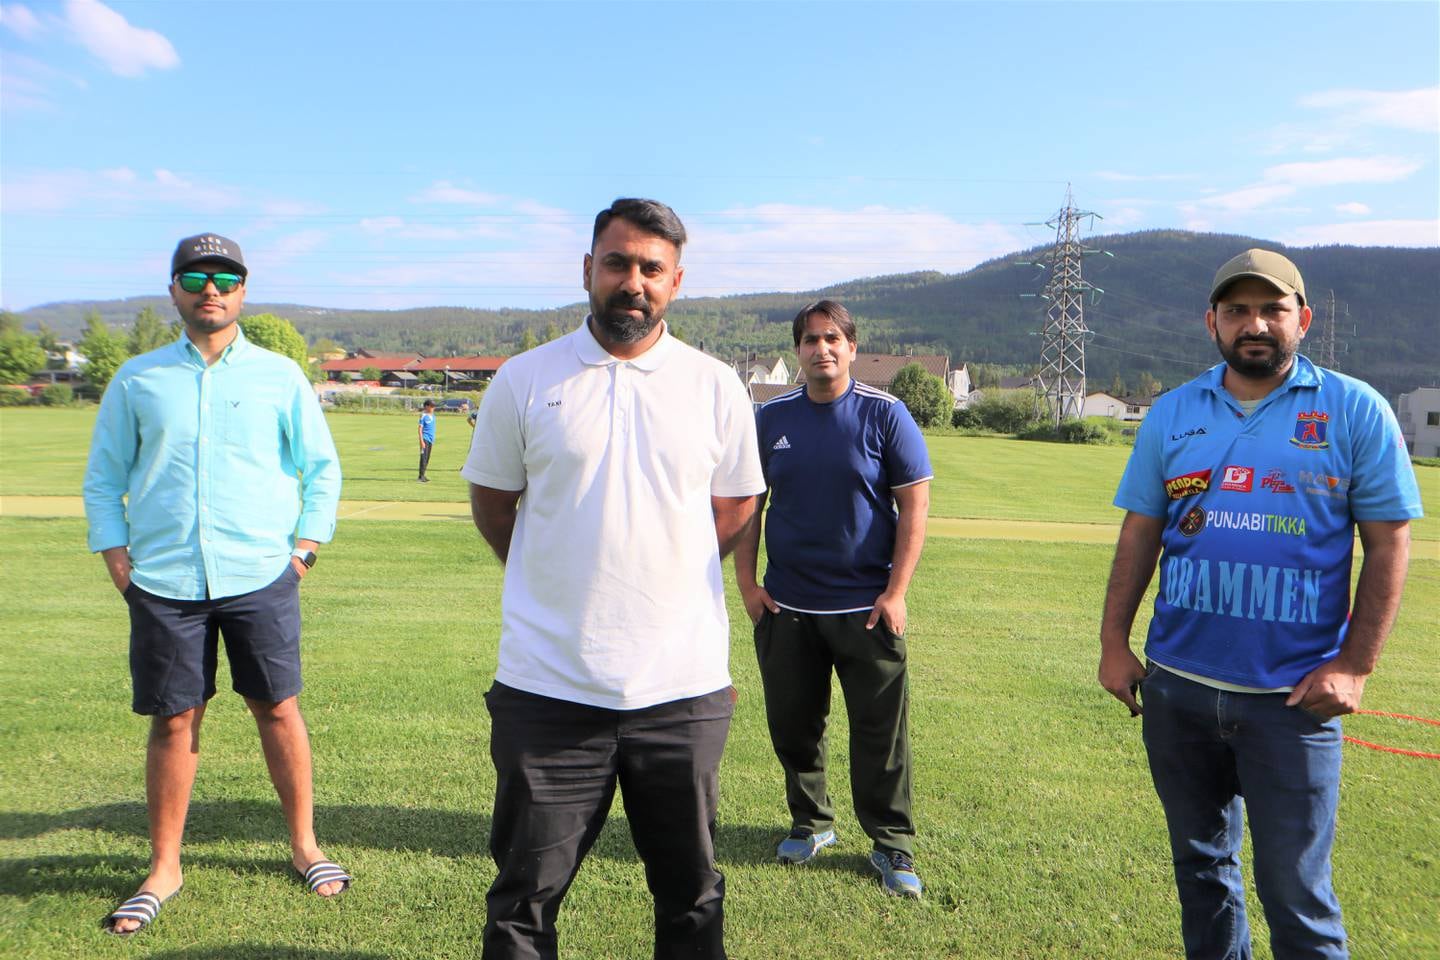 Fra venstre Omar Iqbal, fungerene leder ved Strømsø Cricketklubb, Basif Khan spiller på Strømsø Cricketklubb, Rameez Ashiq er kaptein på Strømsø klubb og Waqas Asif som er trener for U15 og U16 i Drammen cricketklubb.